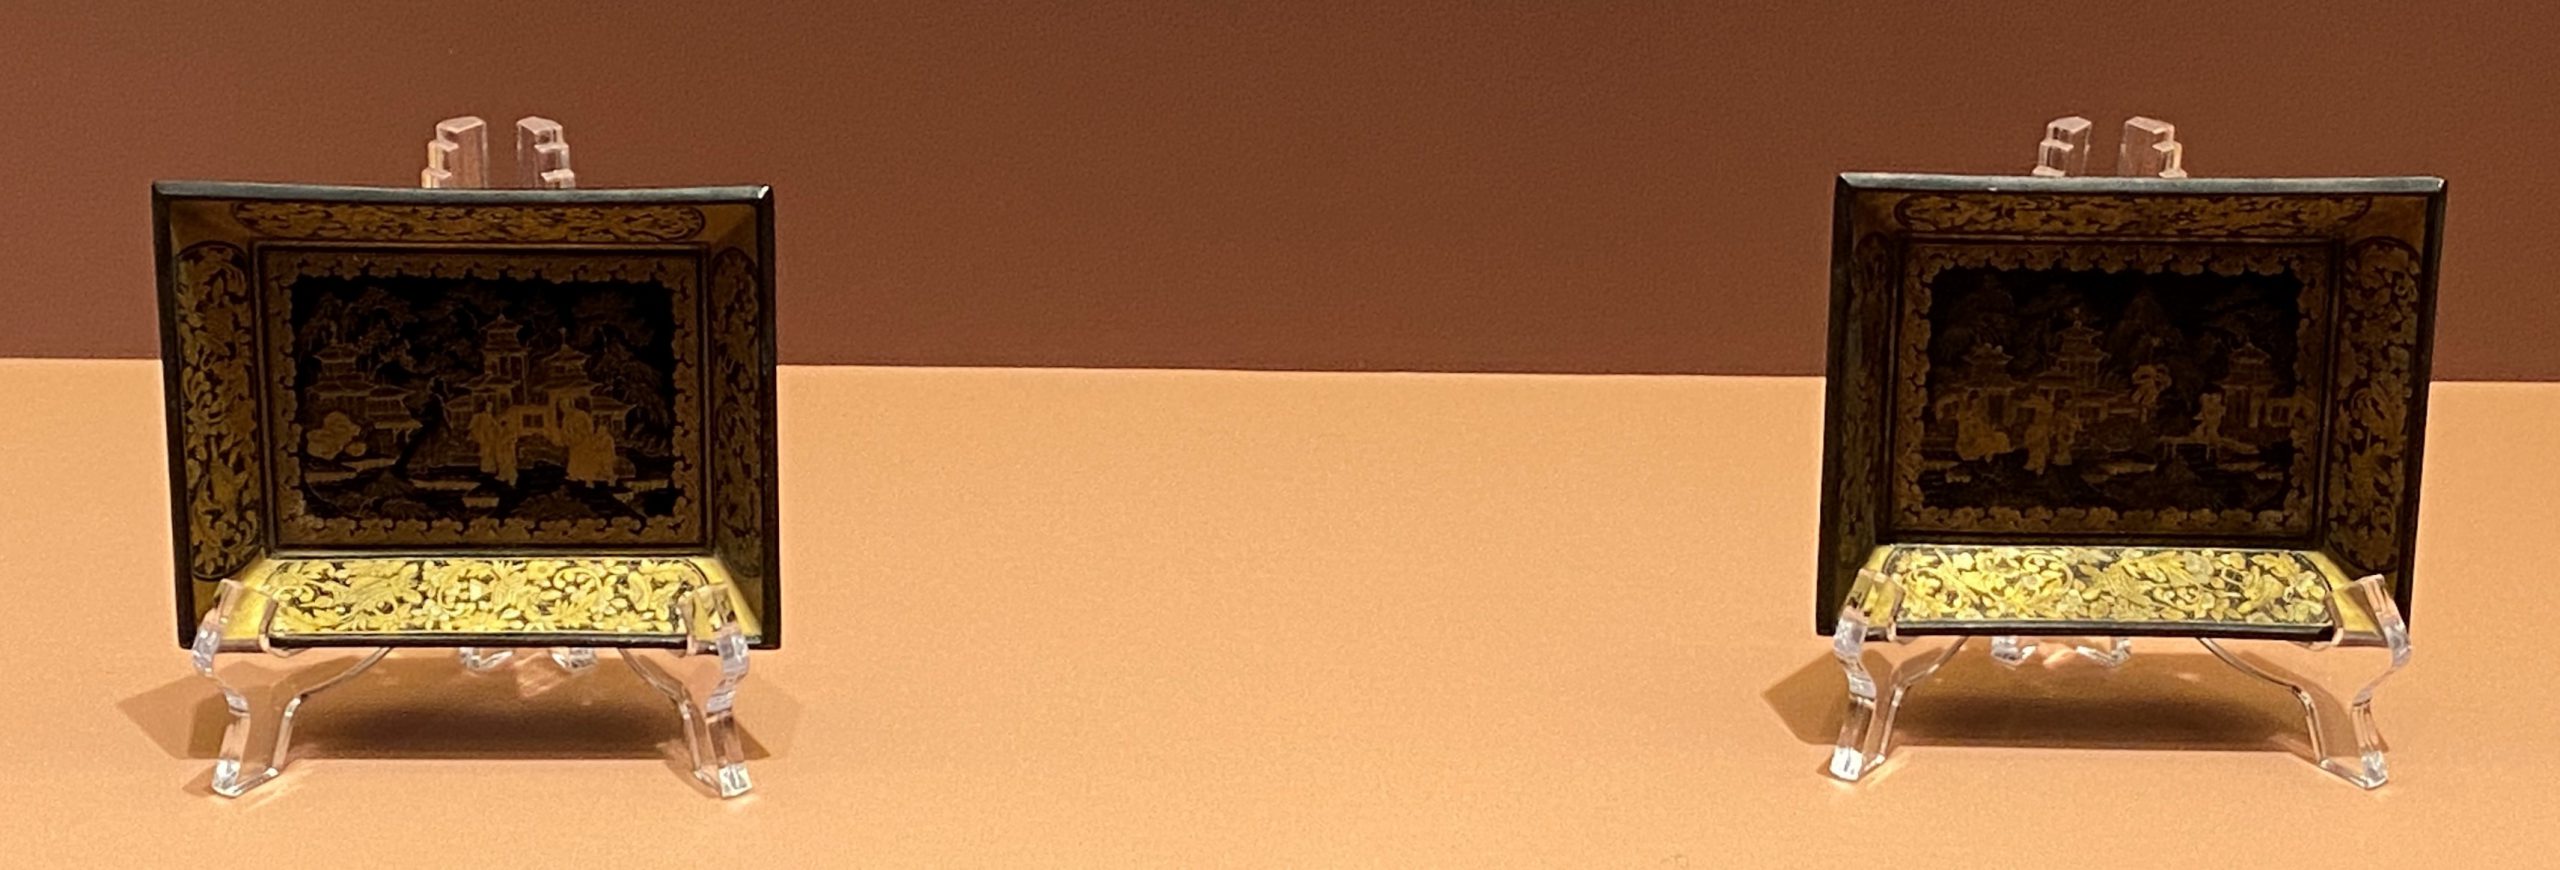 長方形描金漆碟-清時代-特別展【食味人間】四川博物院・中国国家博物館